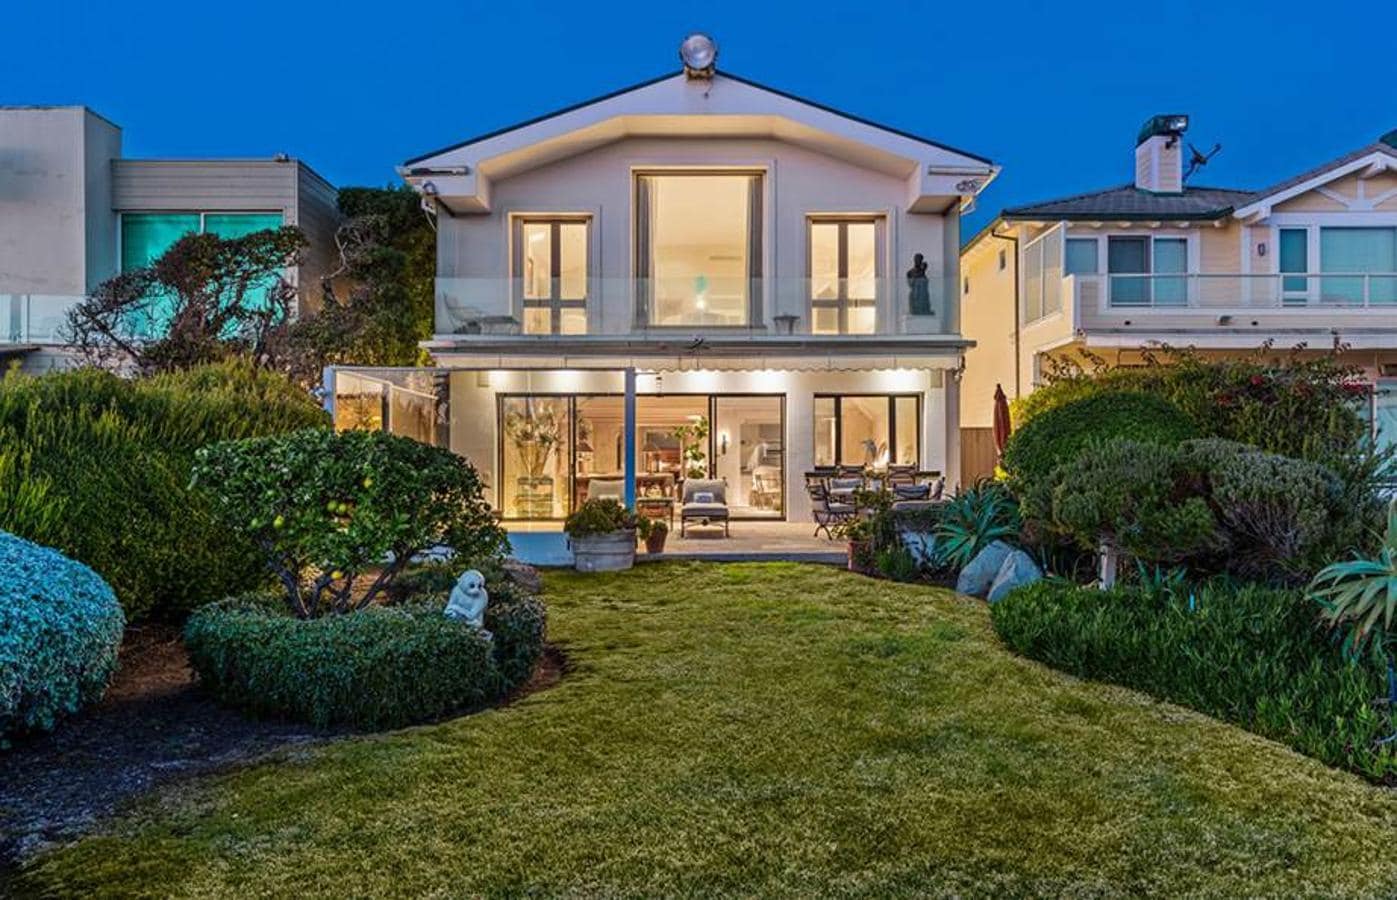 Fachada de la casa. La casa de Frank Sinatra, en Broad Beach en Malibú, California, acaba de ponerse a la venta por cerca de 11.4 millones de euros.